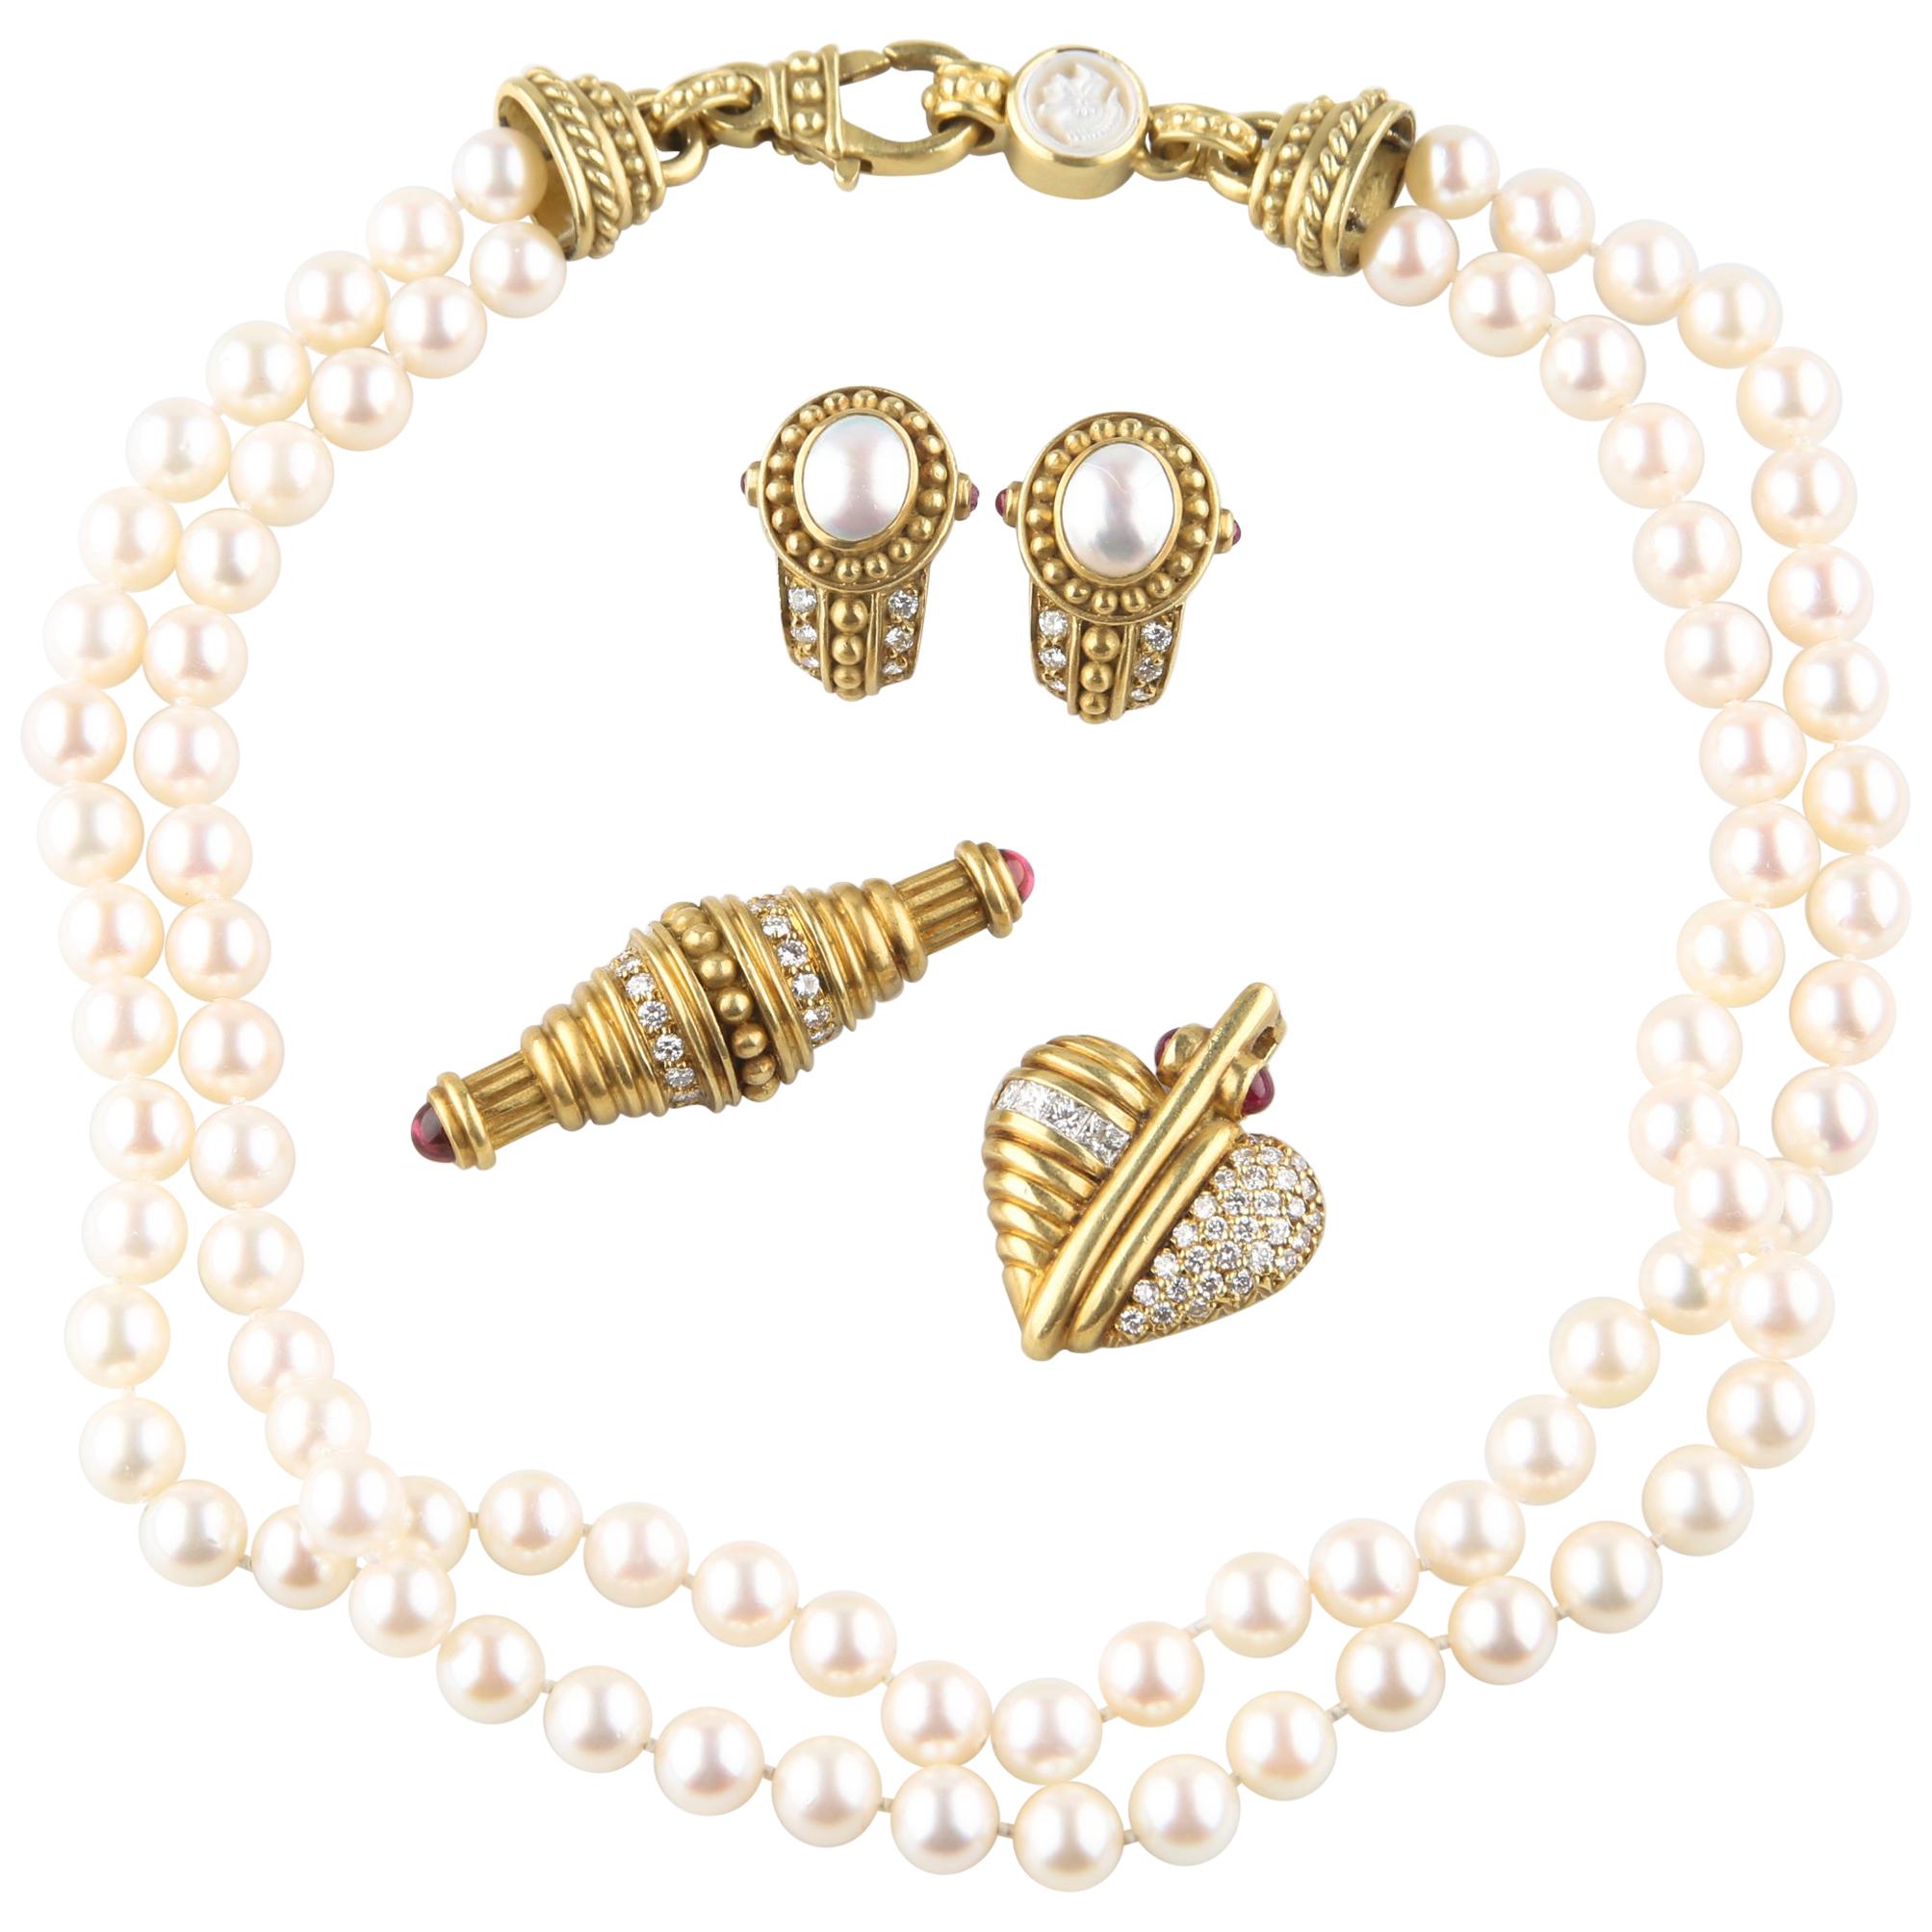 Judith Ripka 18k Gold Diamond Pearl Jewelry Set Necklace Earrings Pendant Brooch For Sale